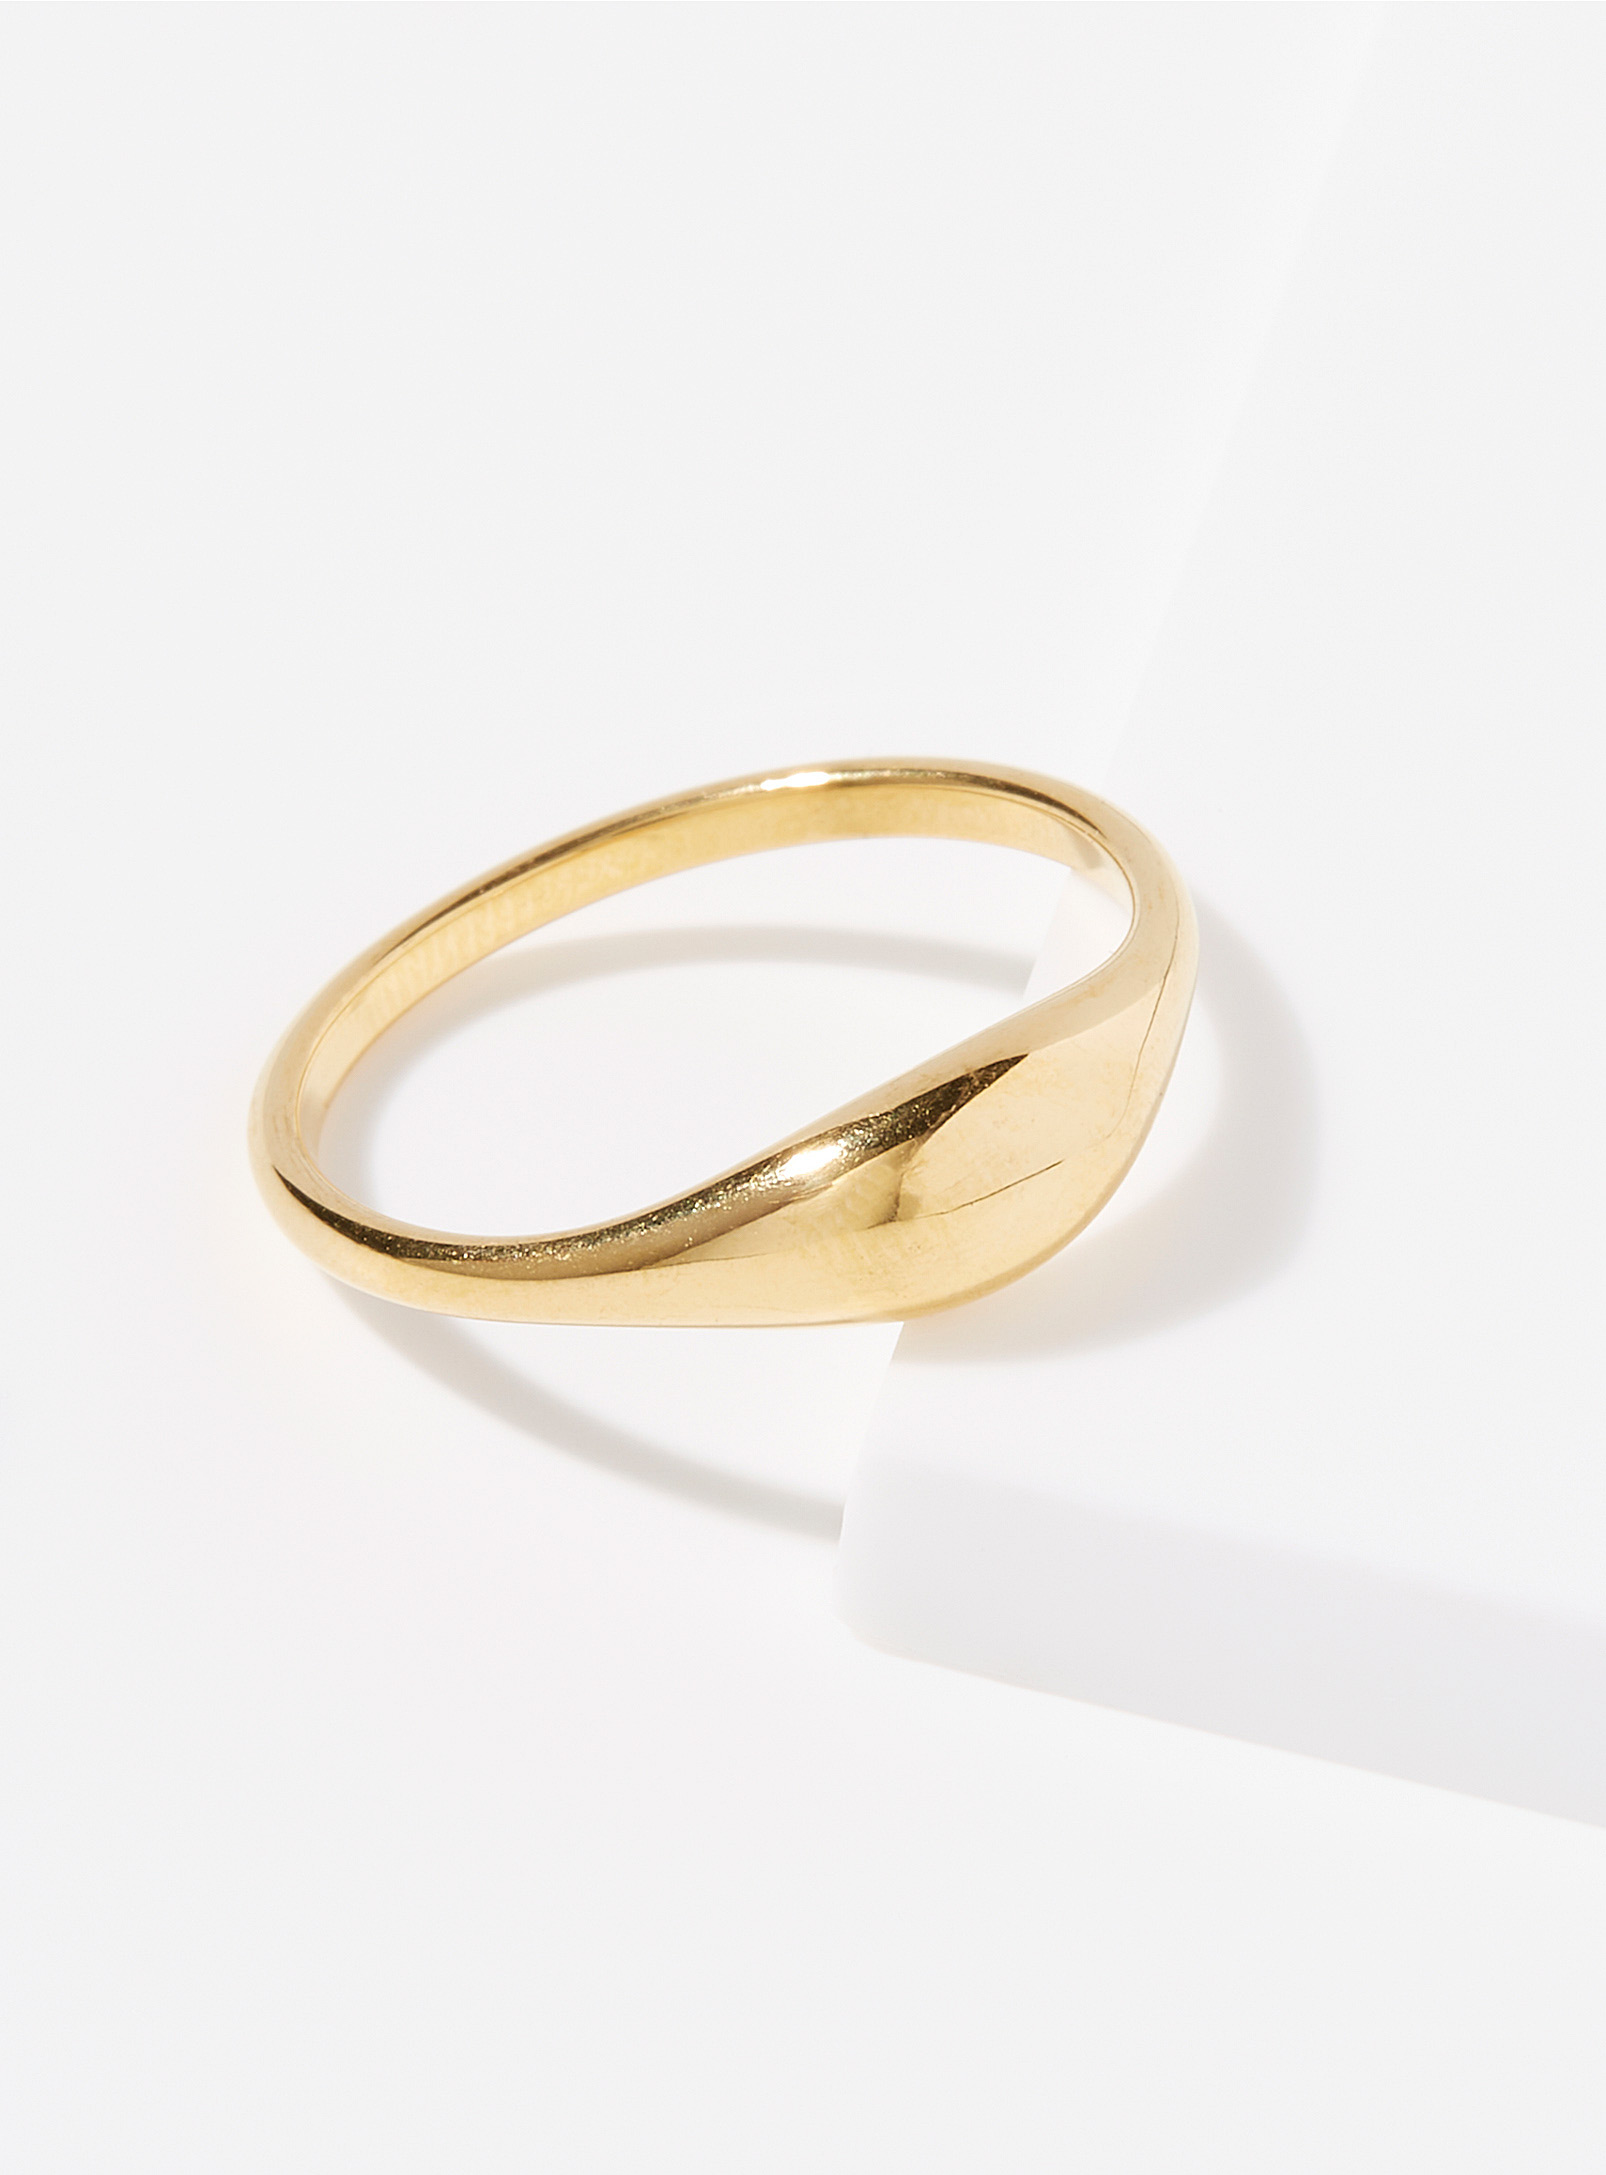 Simons - Women's Quintessential golden ring